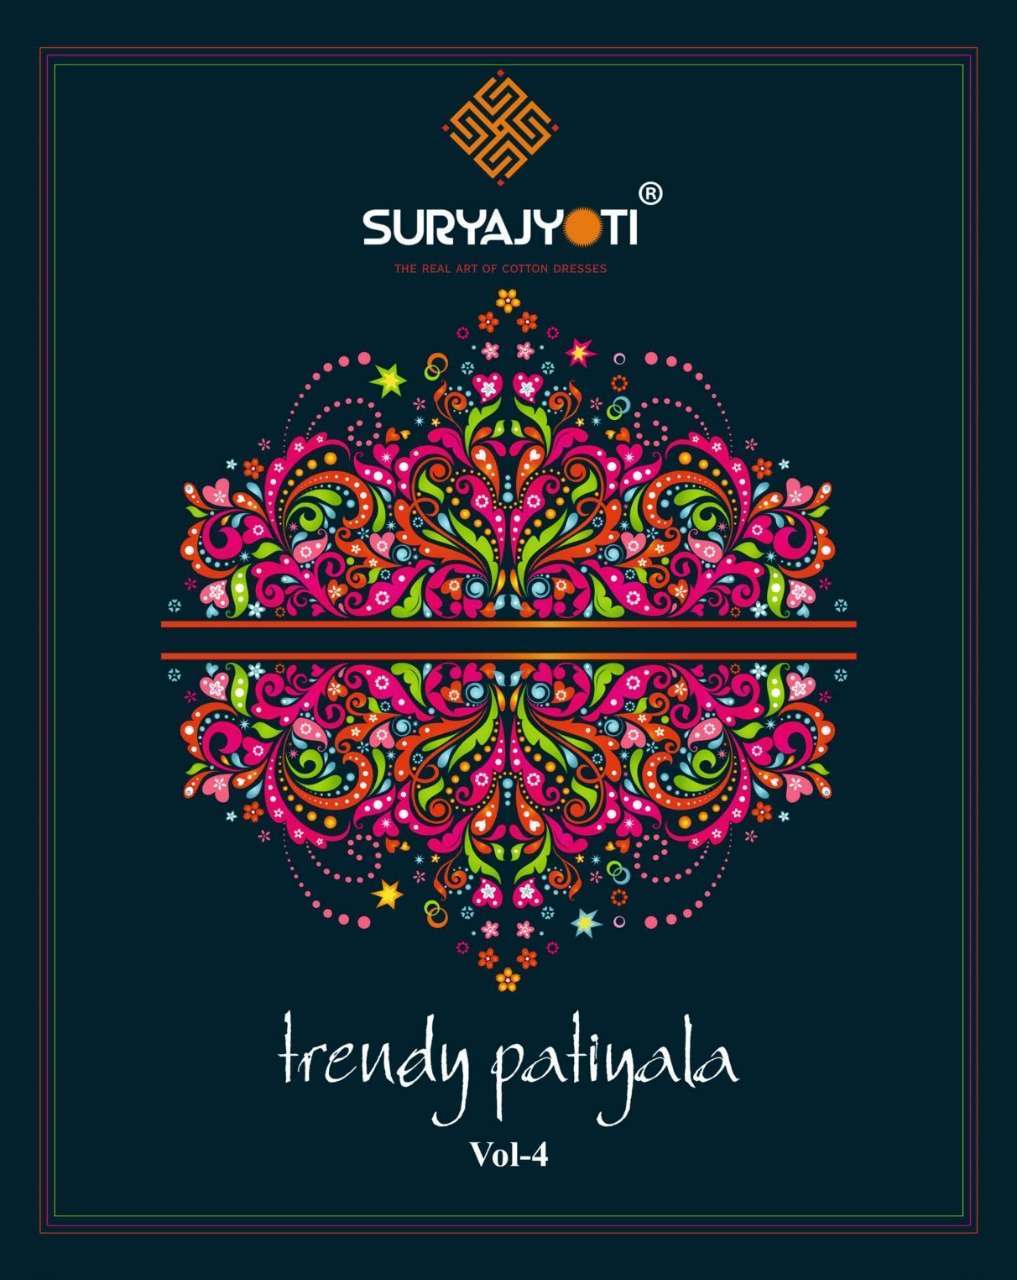 Suryajyoti trendy patiyala vol 4 printed cotton dress materi...